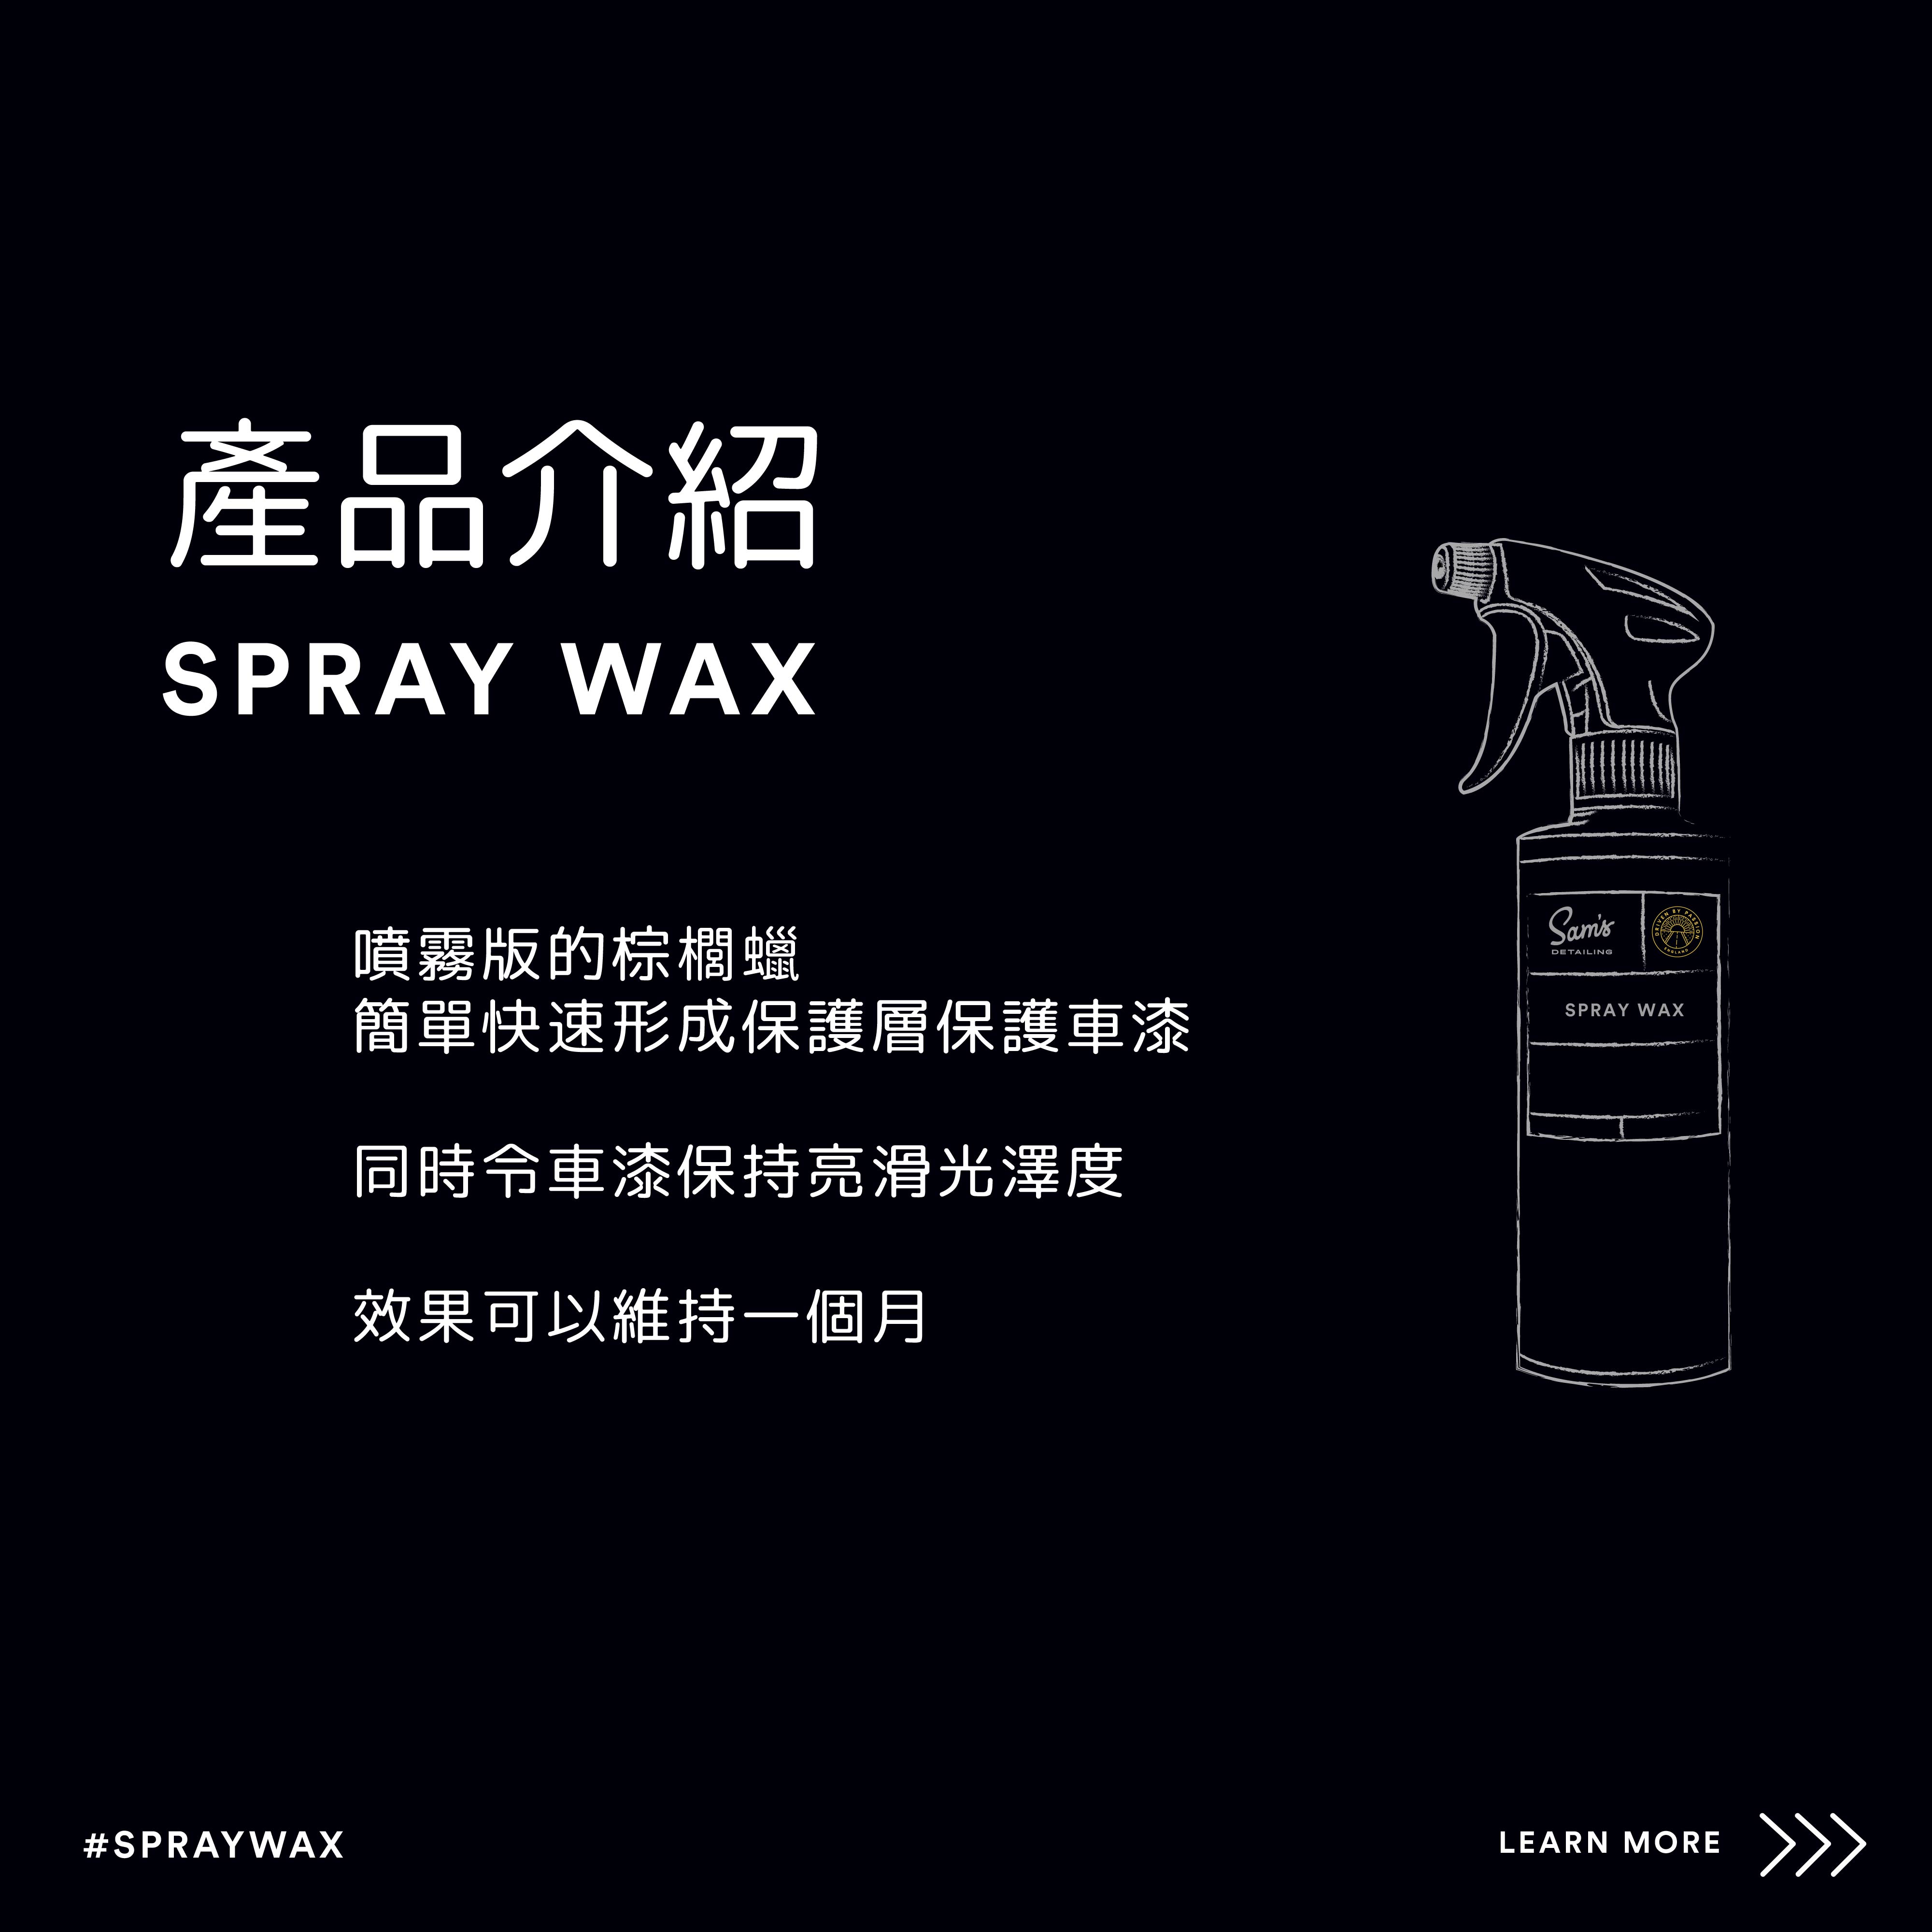 Spray%20wax-02.jpg